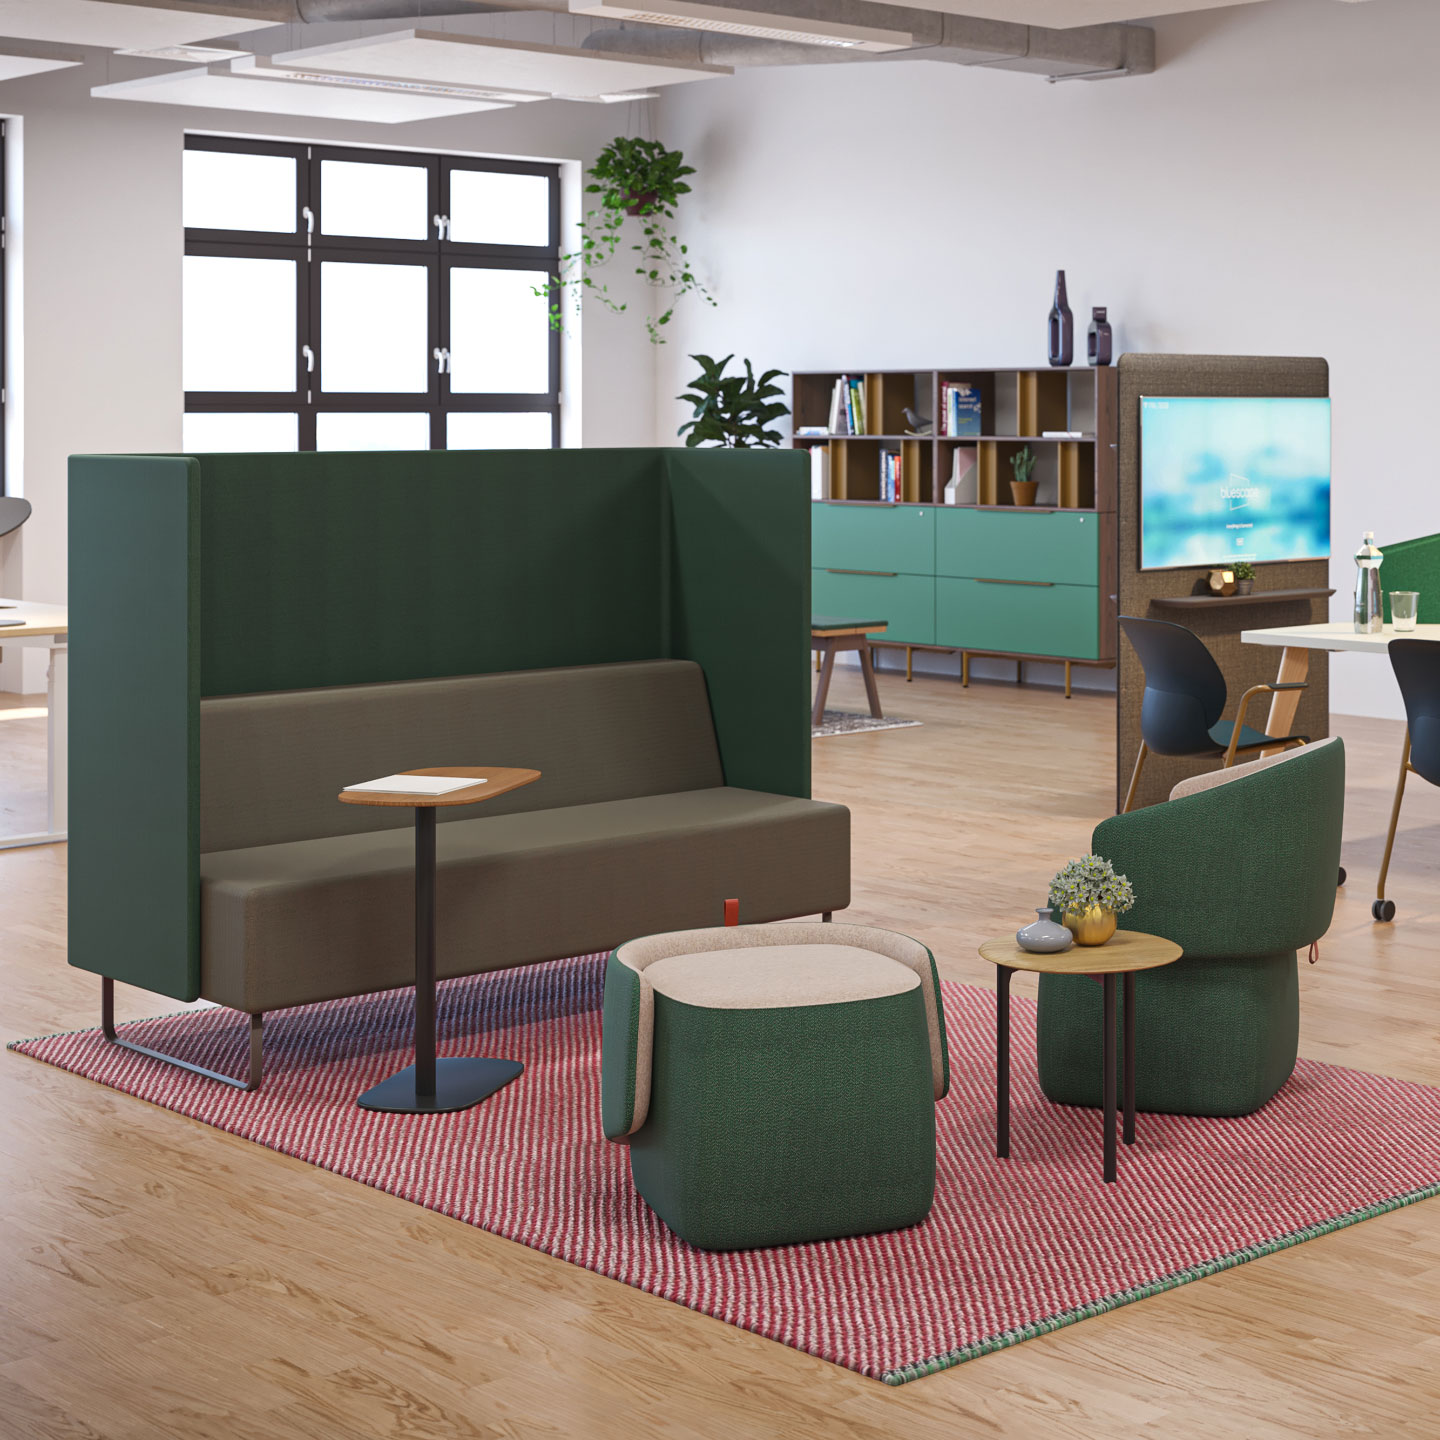 Офисный диван для работы и деловых встреч от Haworth 2